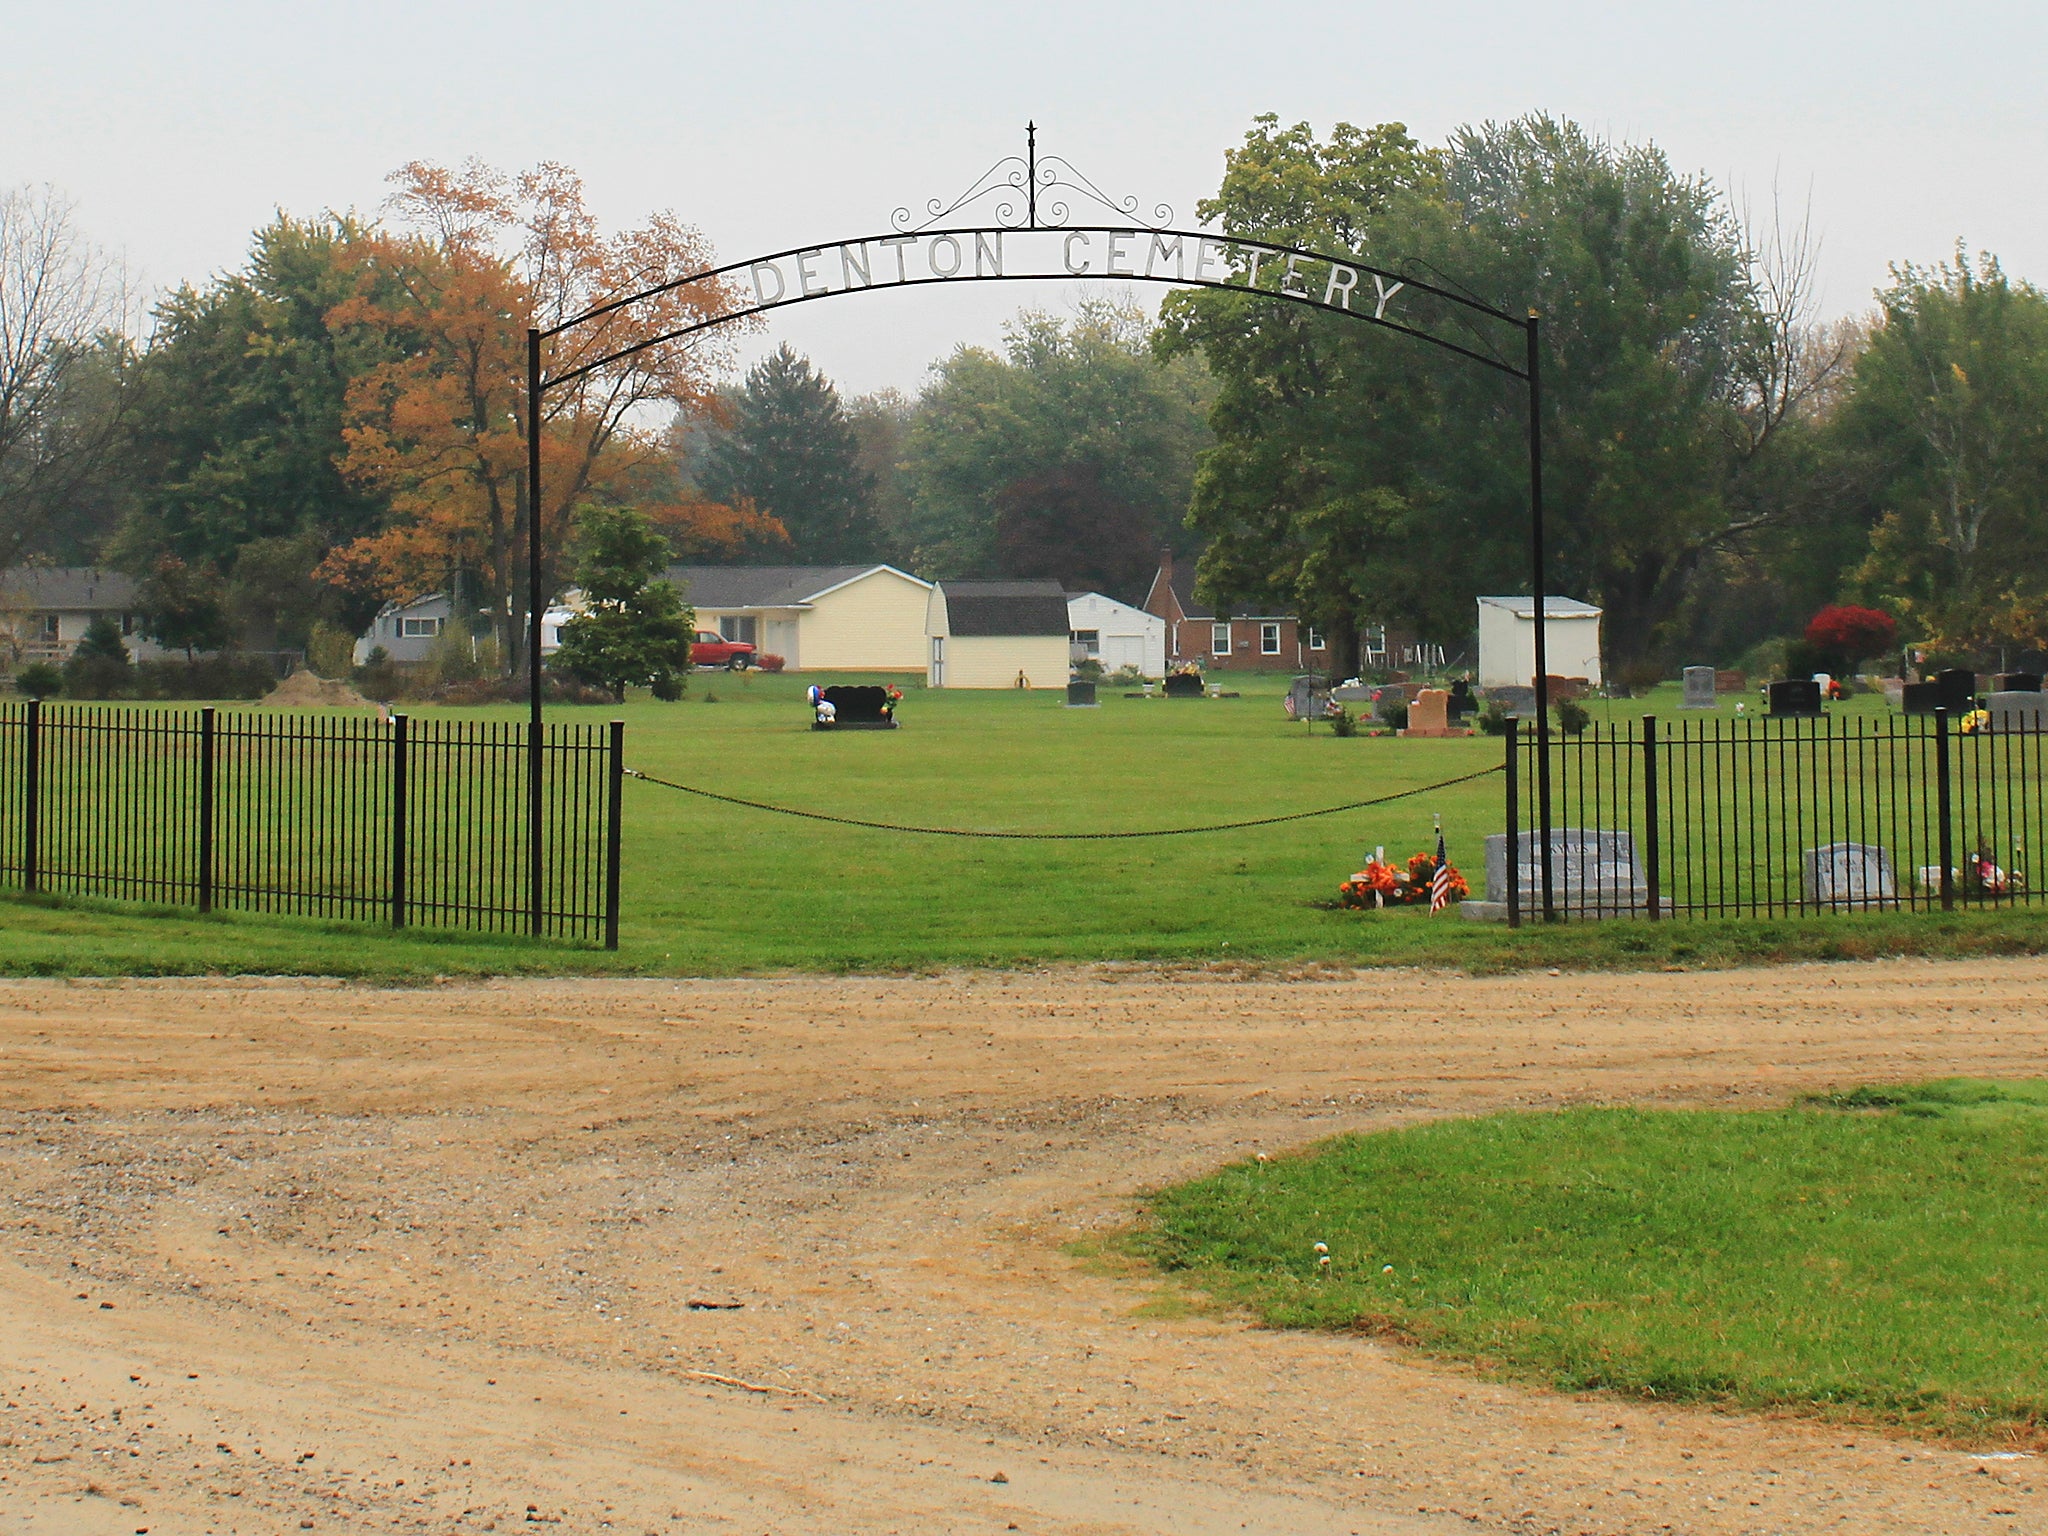 Denton Cemetery where Jane Mixer's body was found